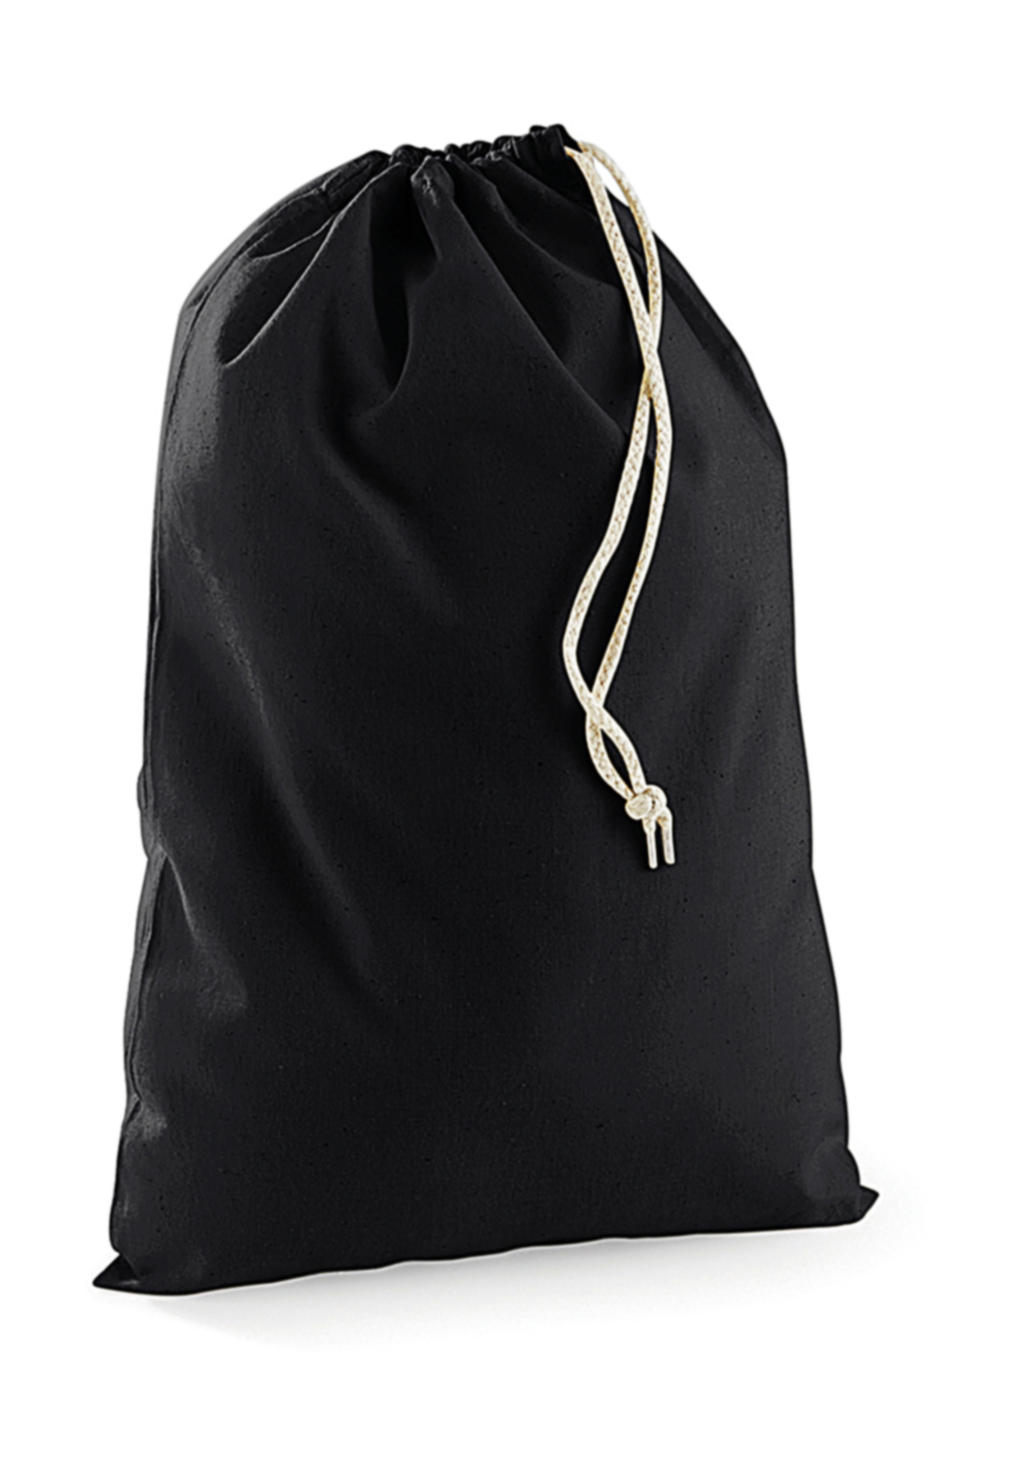  Cotton Stuff Bag in Farbe Black